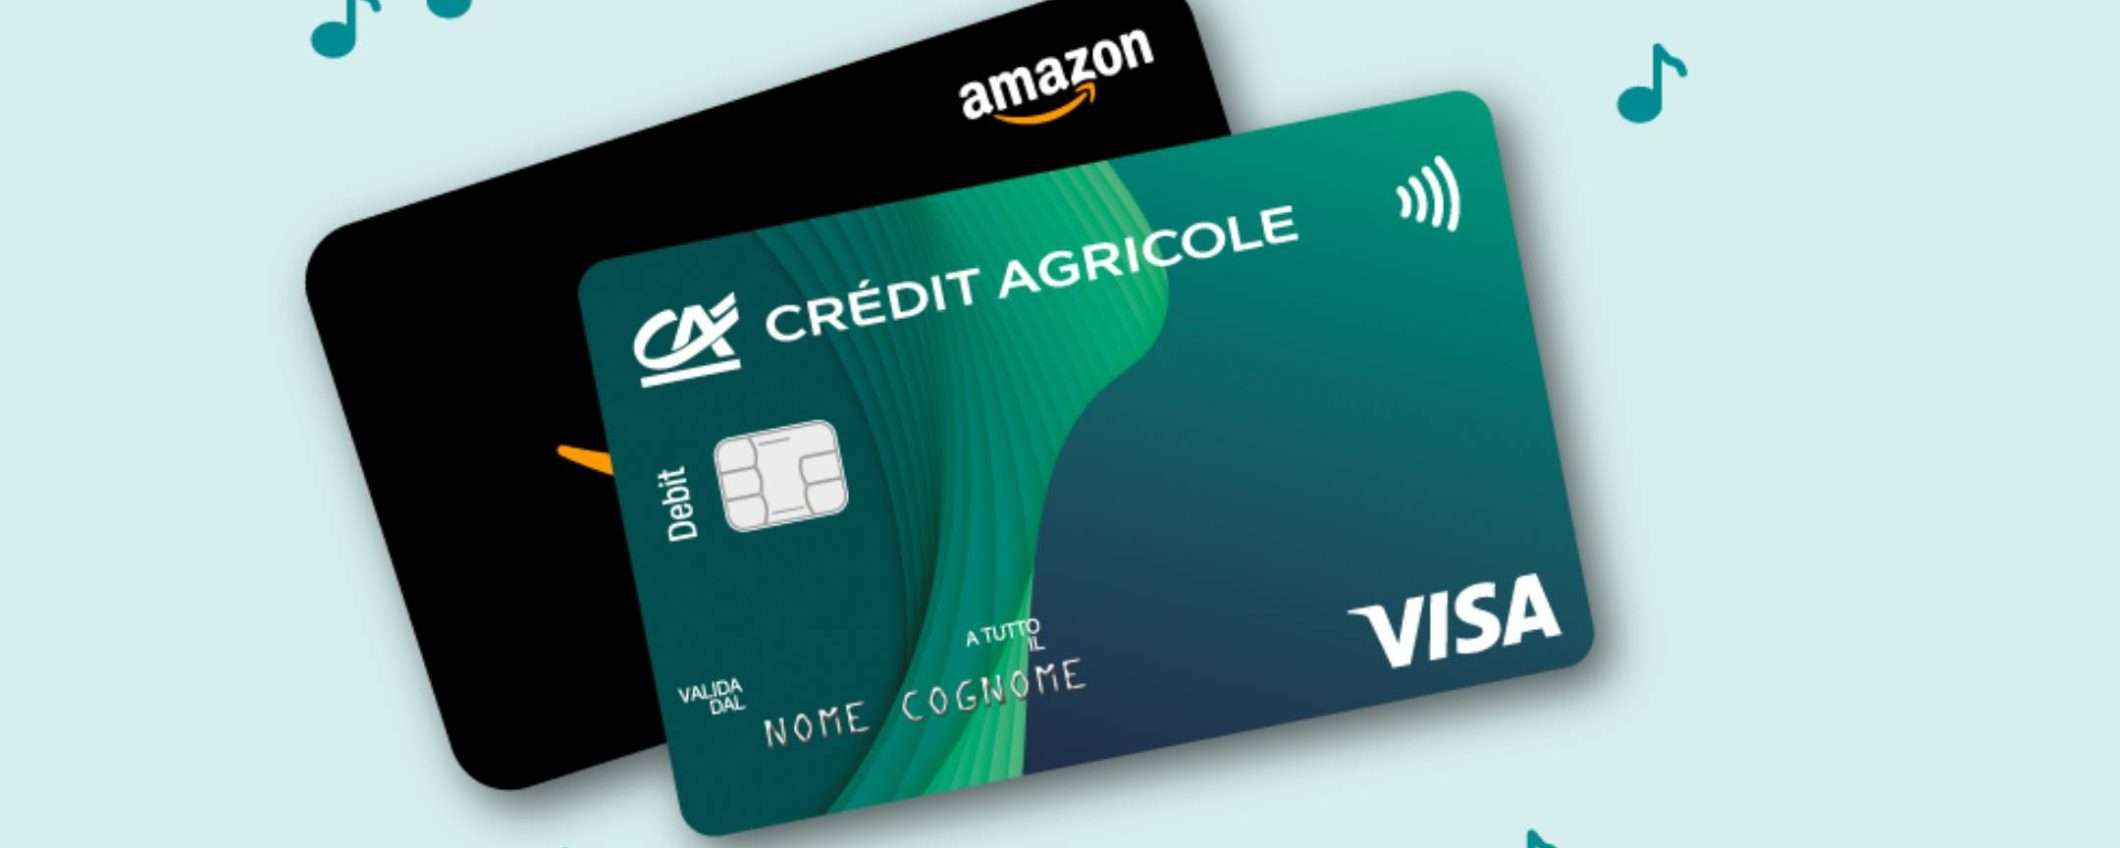 Con Crédit Agricole puoi ottenere fino a 100€ in Buoni Amazon: apri il conto entro il 30/05